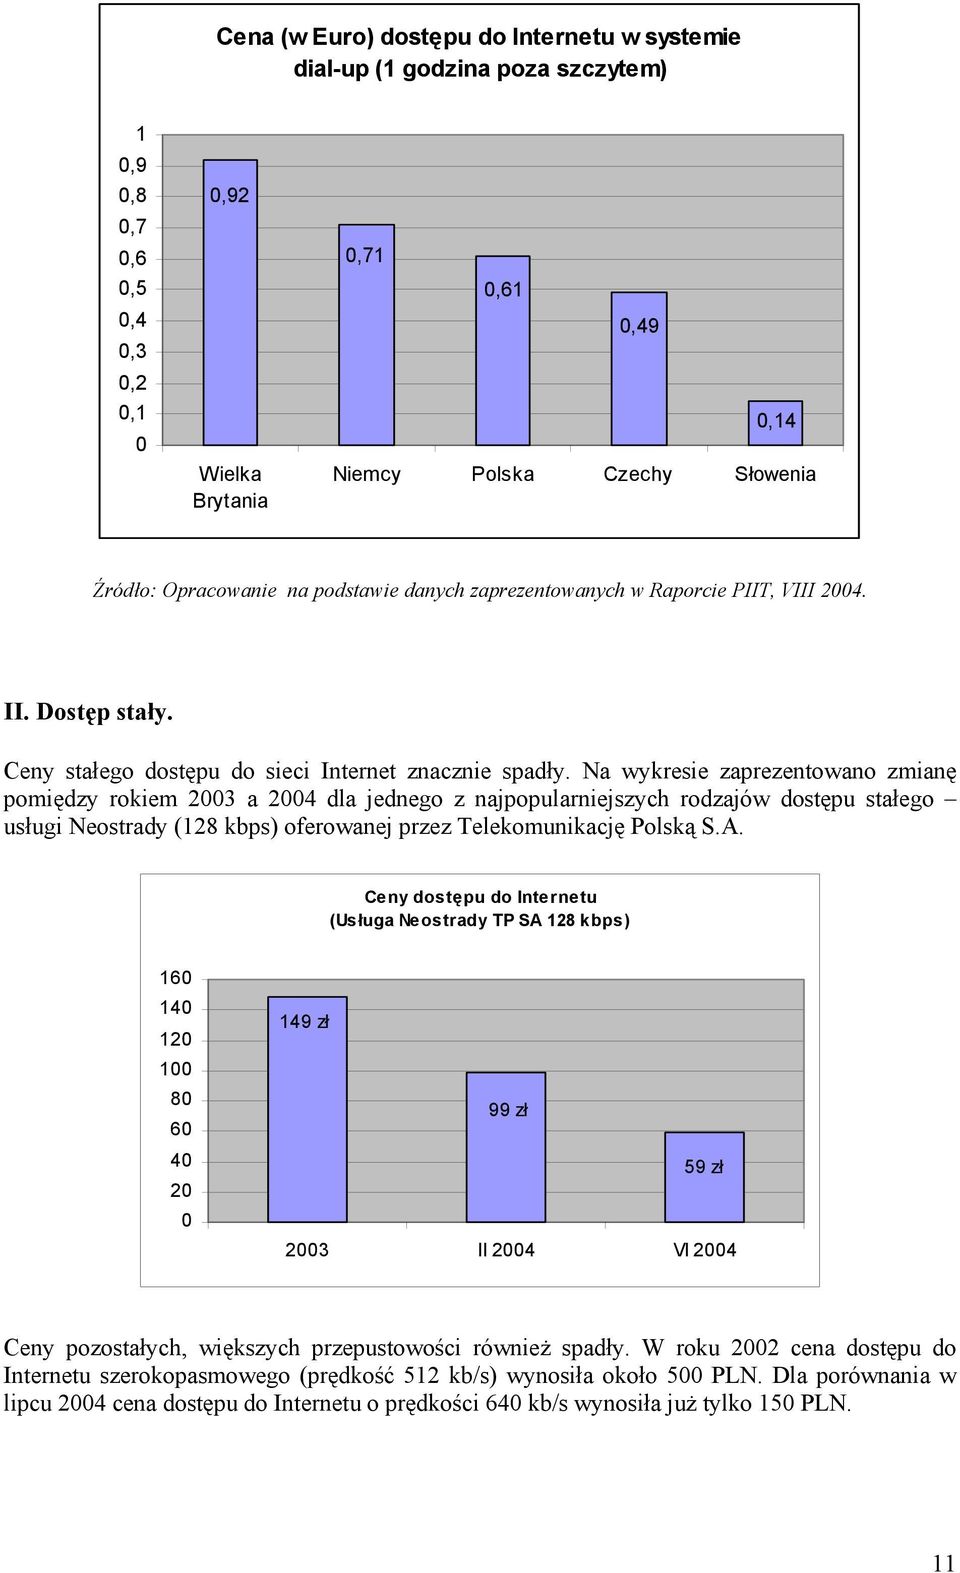 Na wykresie zaprezentowano zmianę pomiędzy rokiem 2003 a 2004 dla jednego z najpopularniejszych rodzajów dostępu stałego usługi Neostrady (128 kbps) oferowanej przez Telekomunikację Polską S.A.